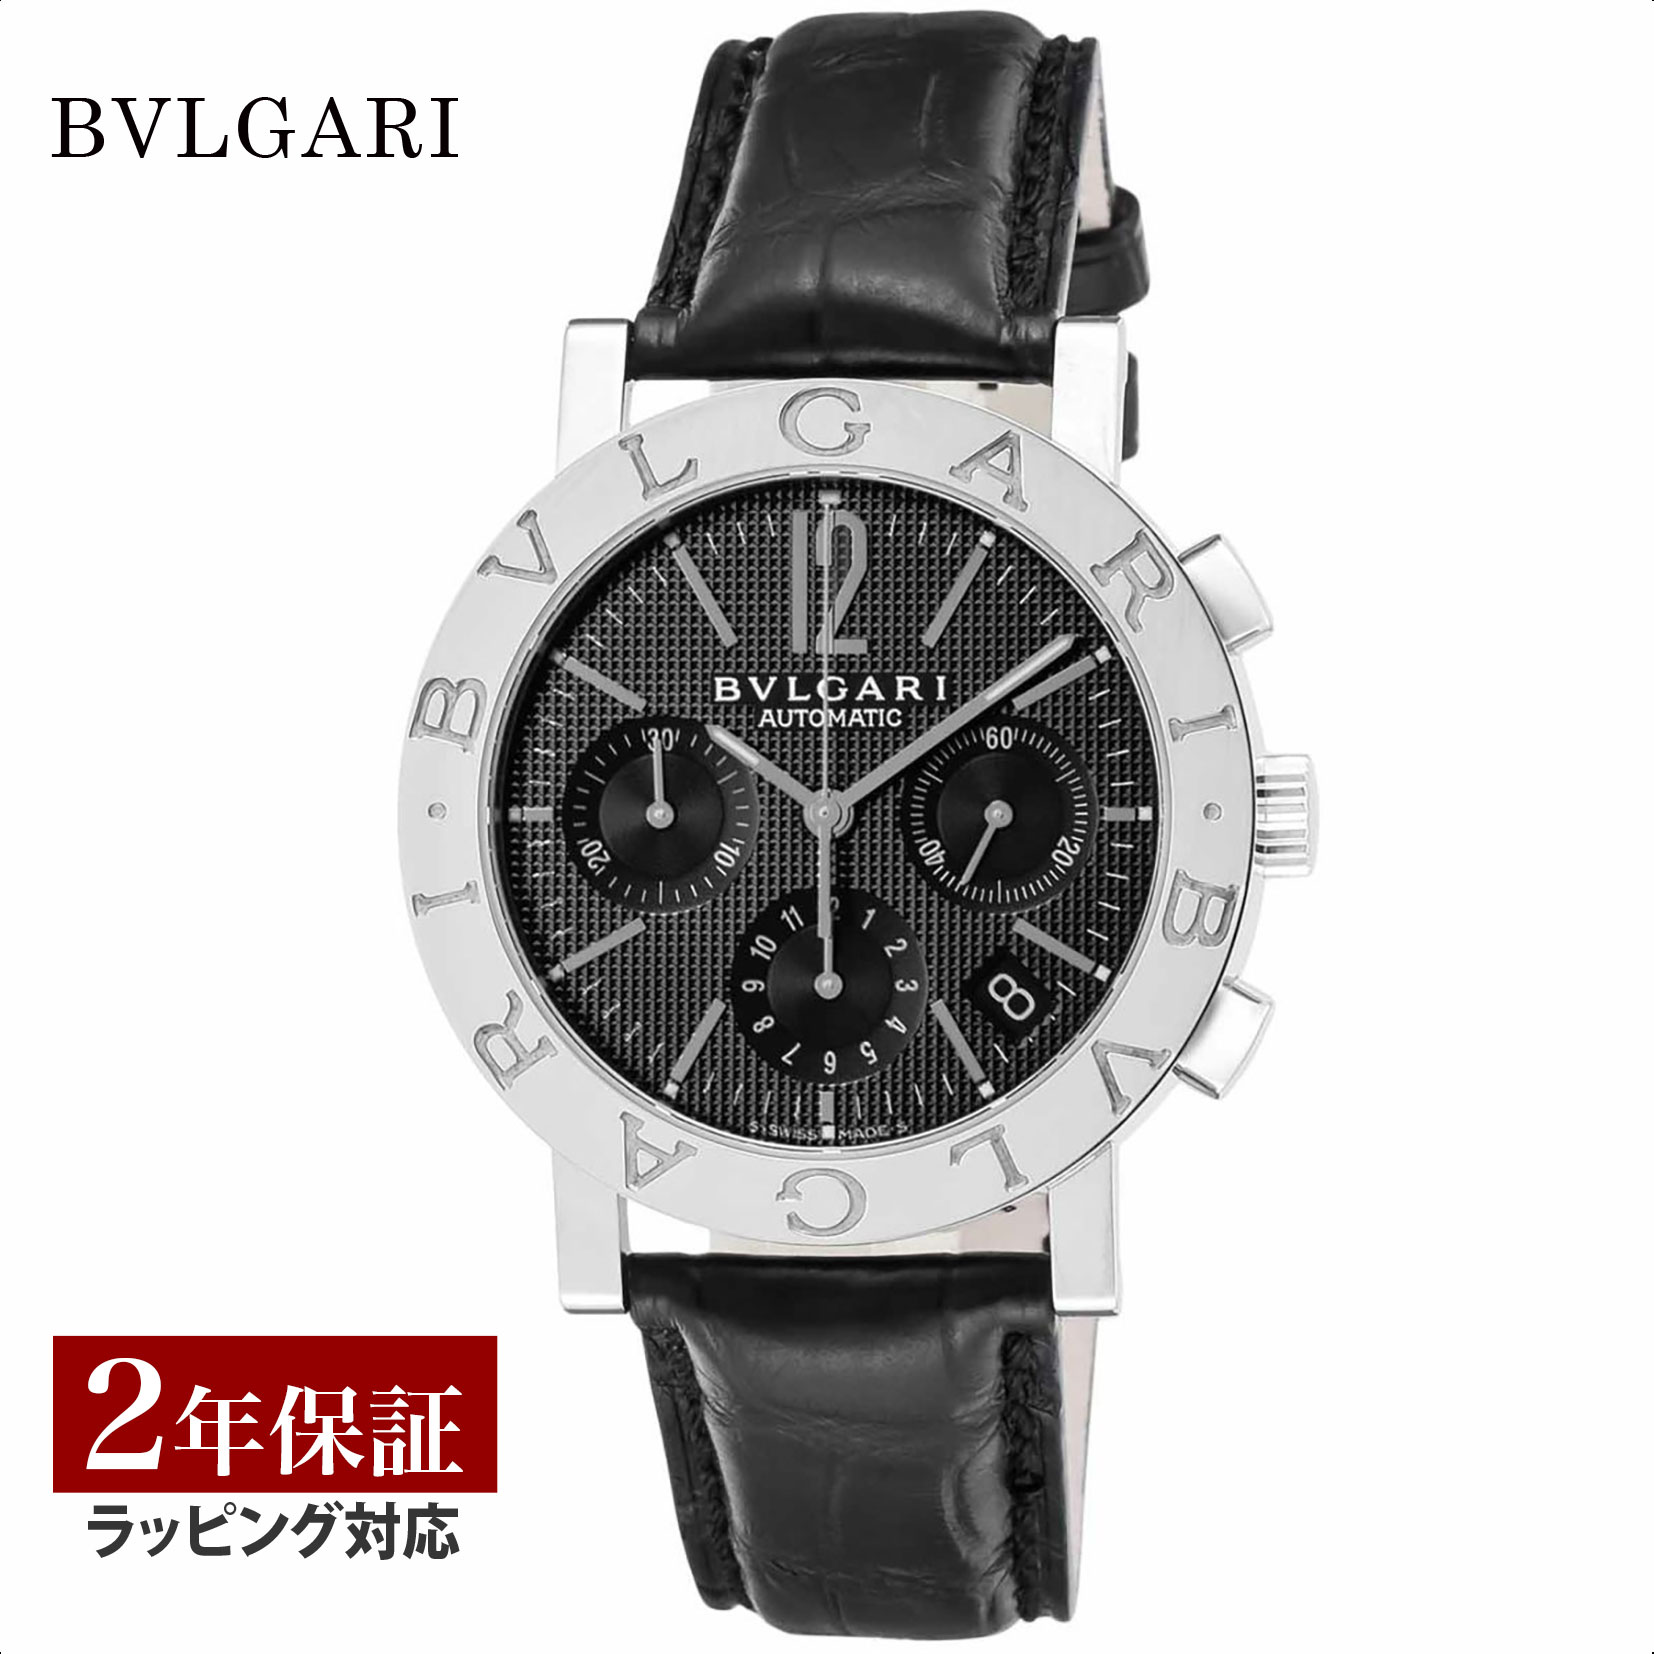 ブルガリブルガリ 腕時計（メンズ） 【レビューでブルガリディナー券】BVLGARI ブルガリ ブルガリブルガリ 自動巻 メンズ ブラック BB38BSLDCH 時計 腕時計 高級腕時計 ブランド